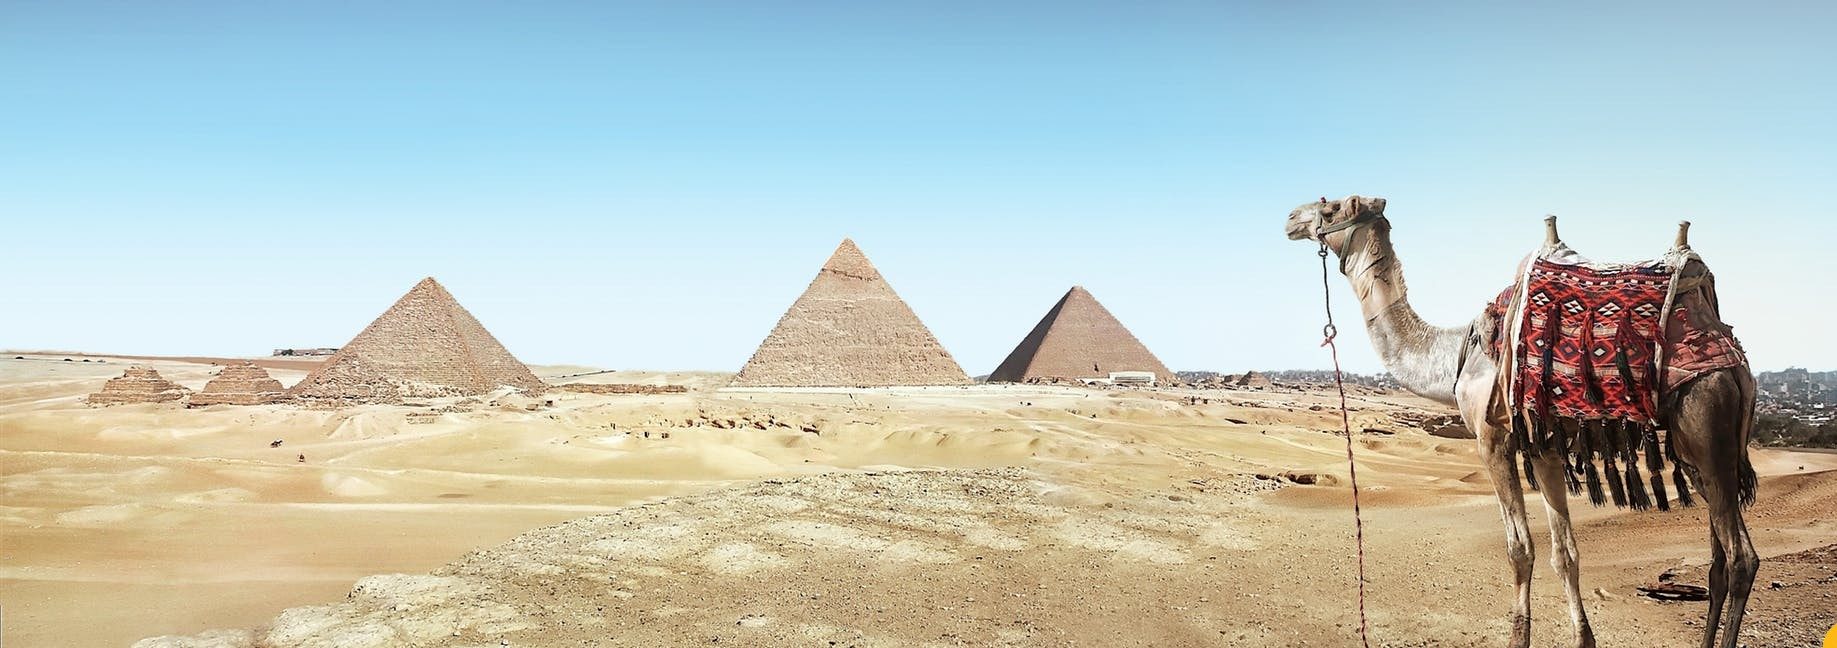 تفسير رؤية المصري في المنام - تفسير الاحلام اونلاين